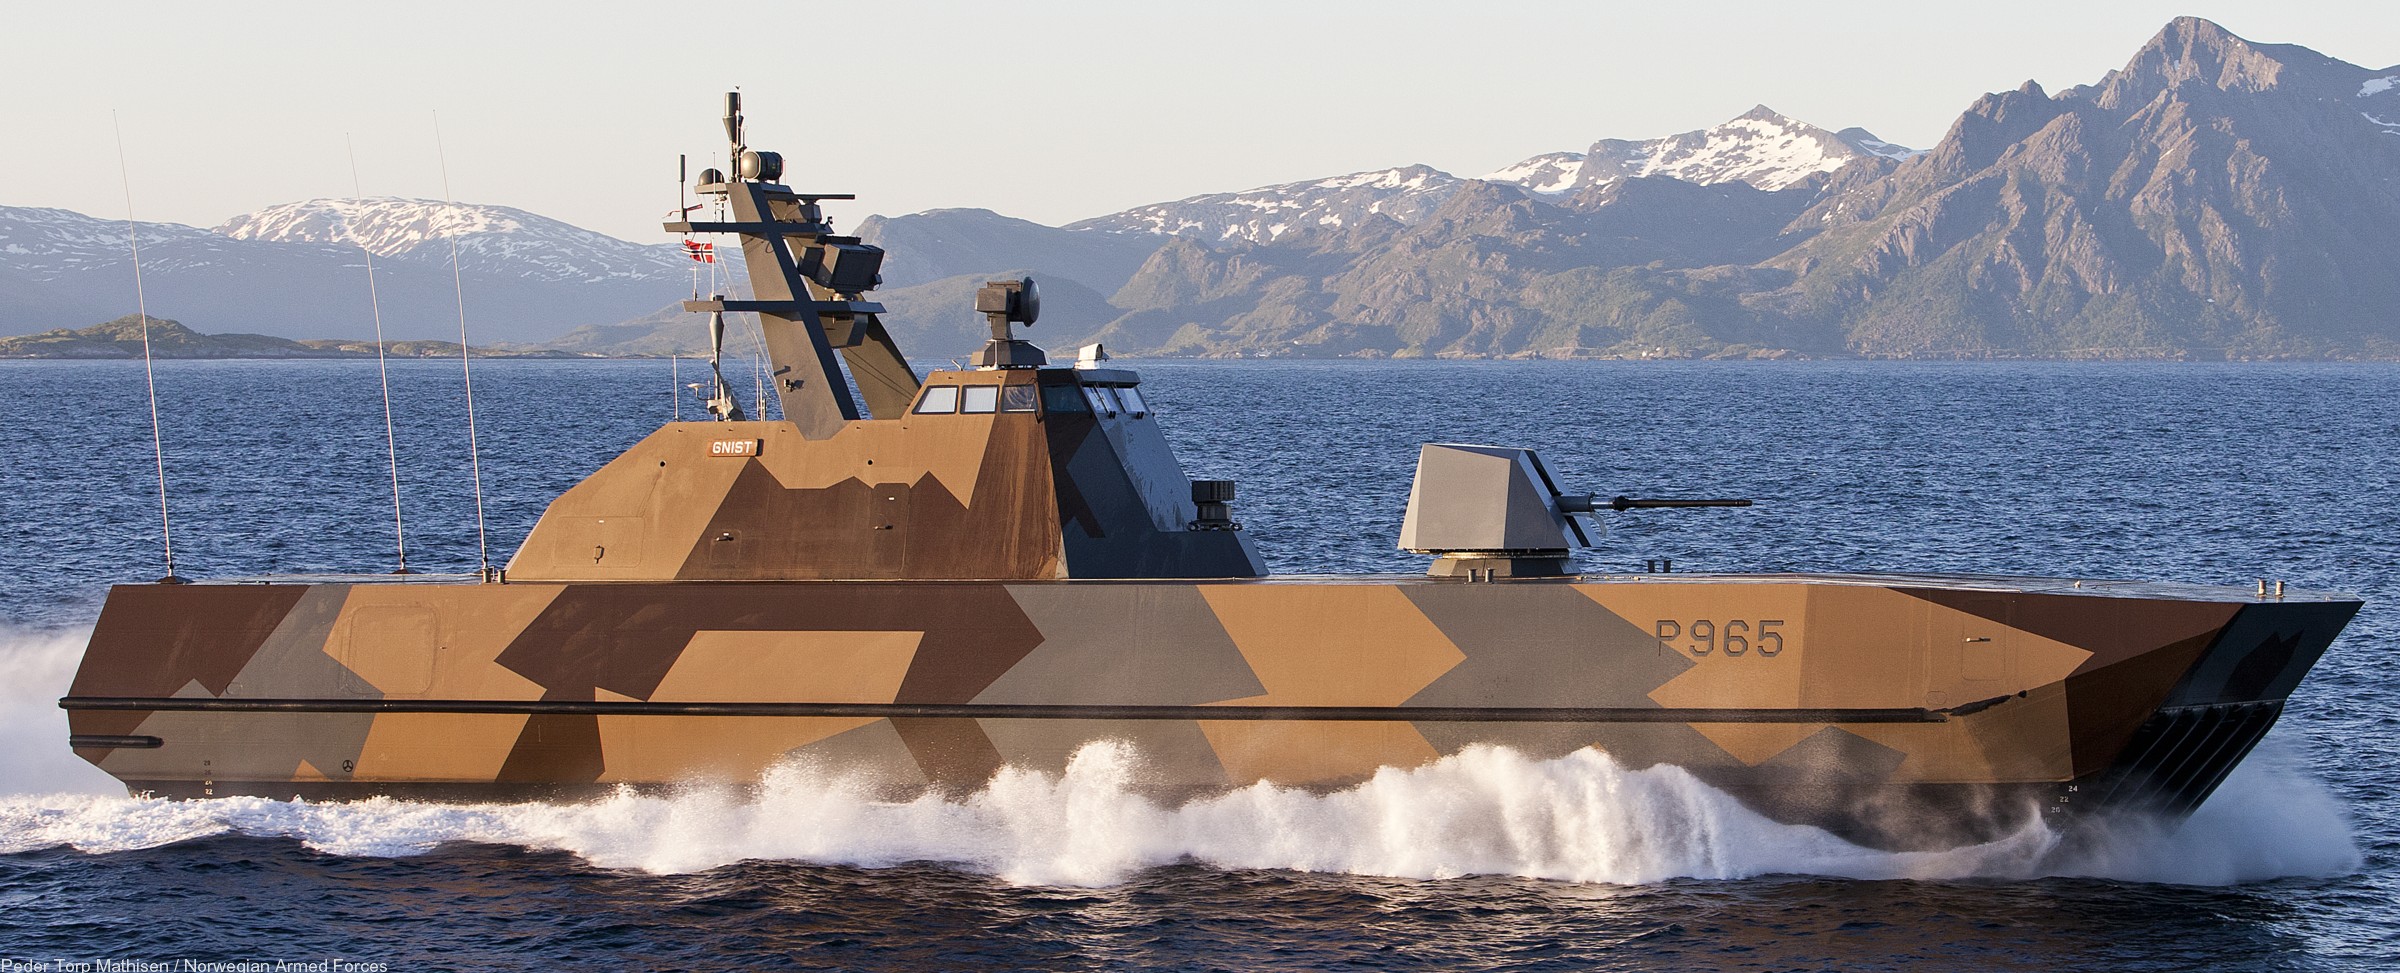 skjold class corvette hnoms knm royal norwegian navy sjoforsvaret storm skudd steil glimt gnist umoe mandal 02x